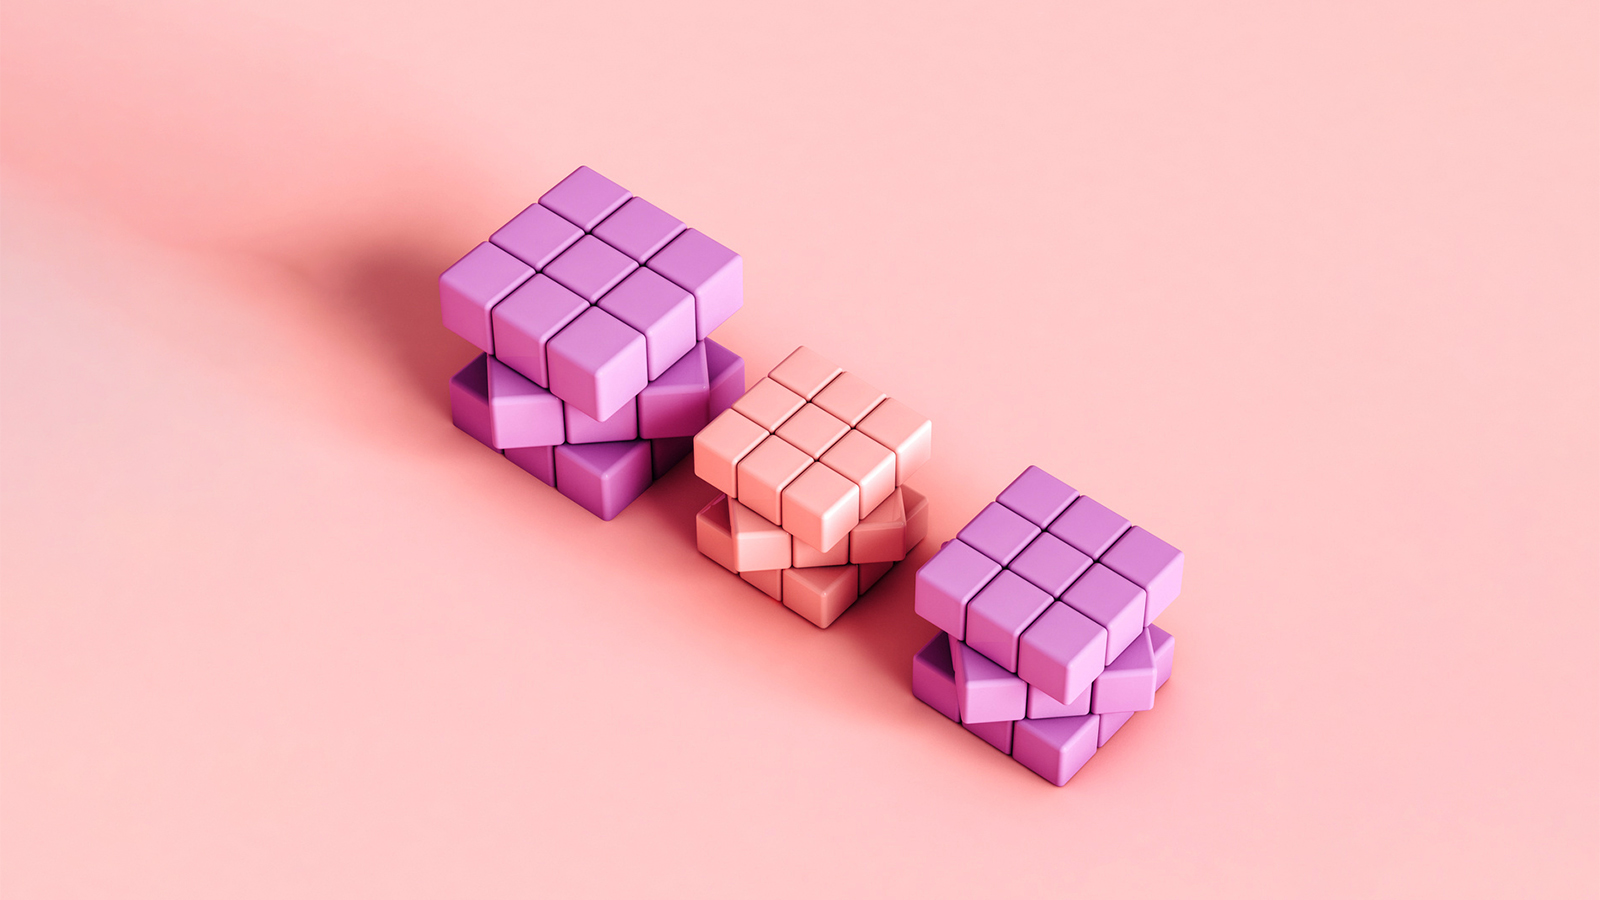 3 pink rubics cubes